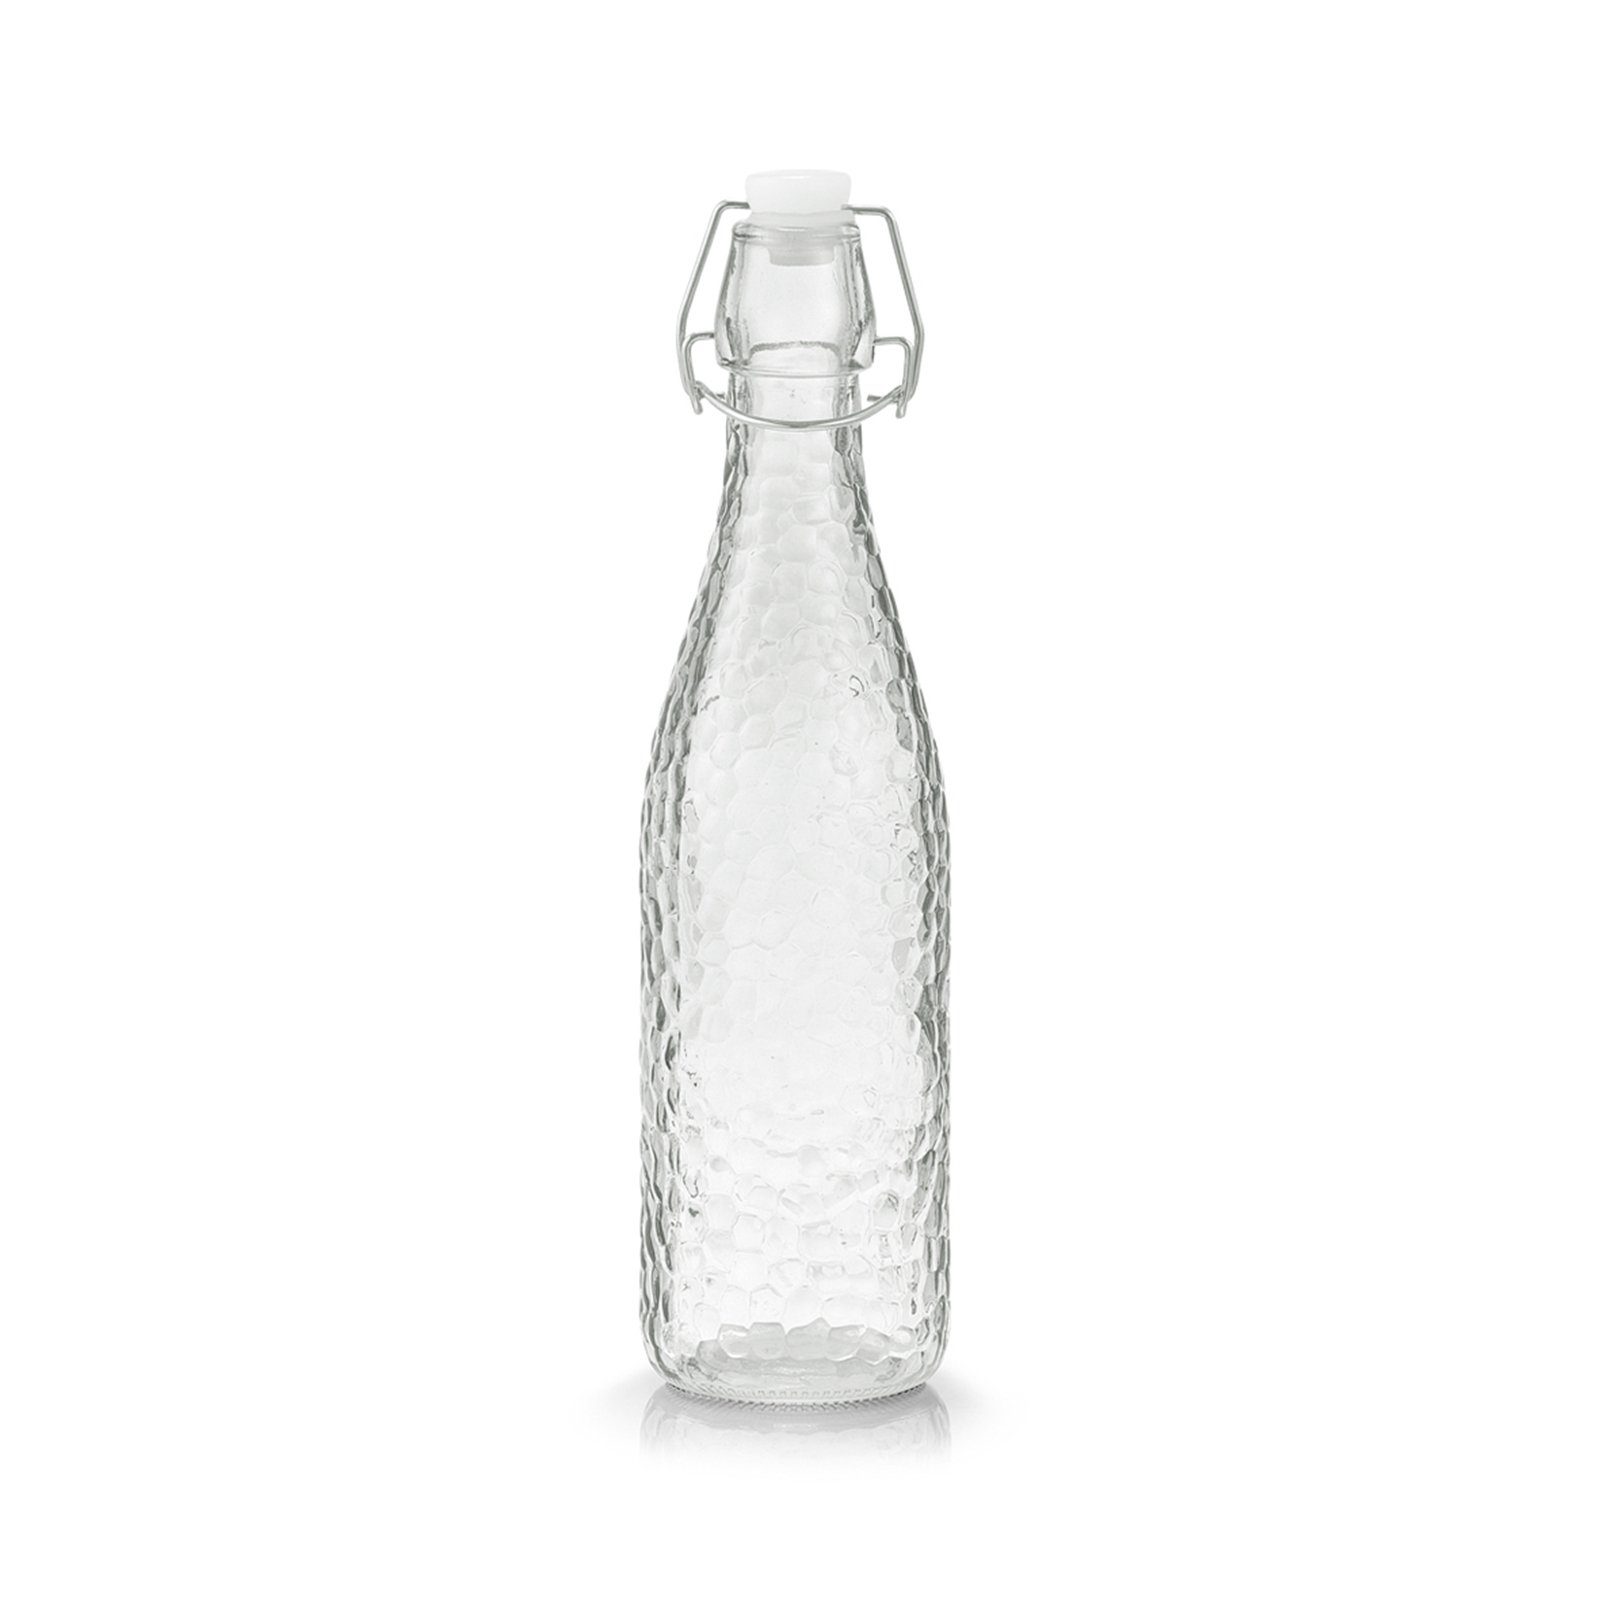 Bügelverschluss, Neuetischkultur Glasflasche Vorratsglas mit transparent Glas